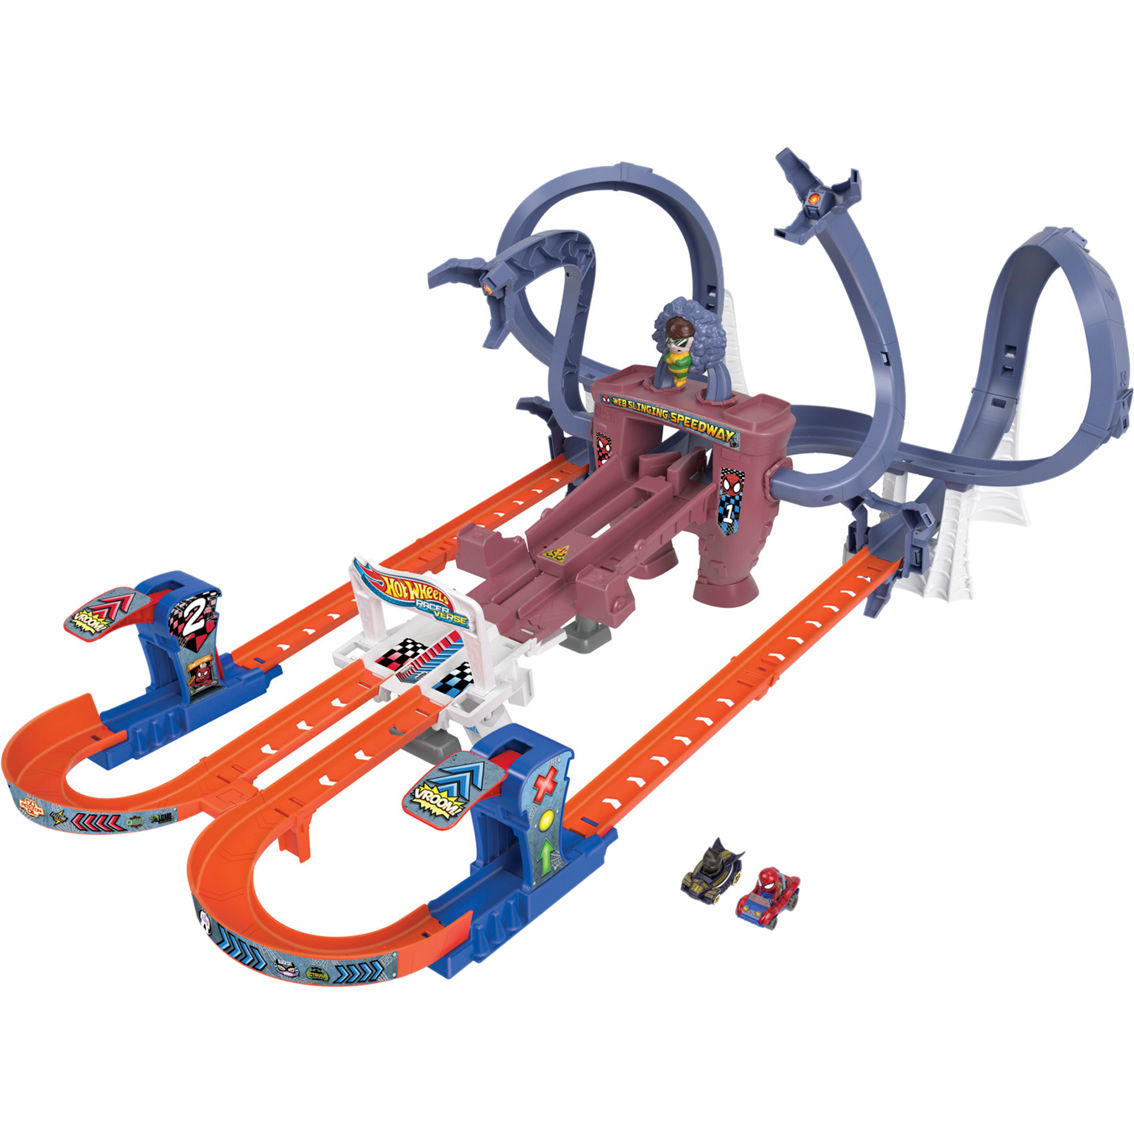 Hot Wheels Racerverse Spider-Man's Web Slinging Speedway Track Set - Image 2 of 9